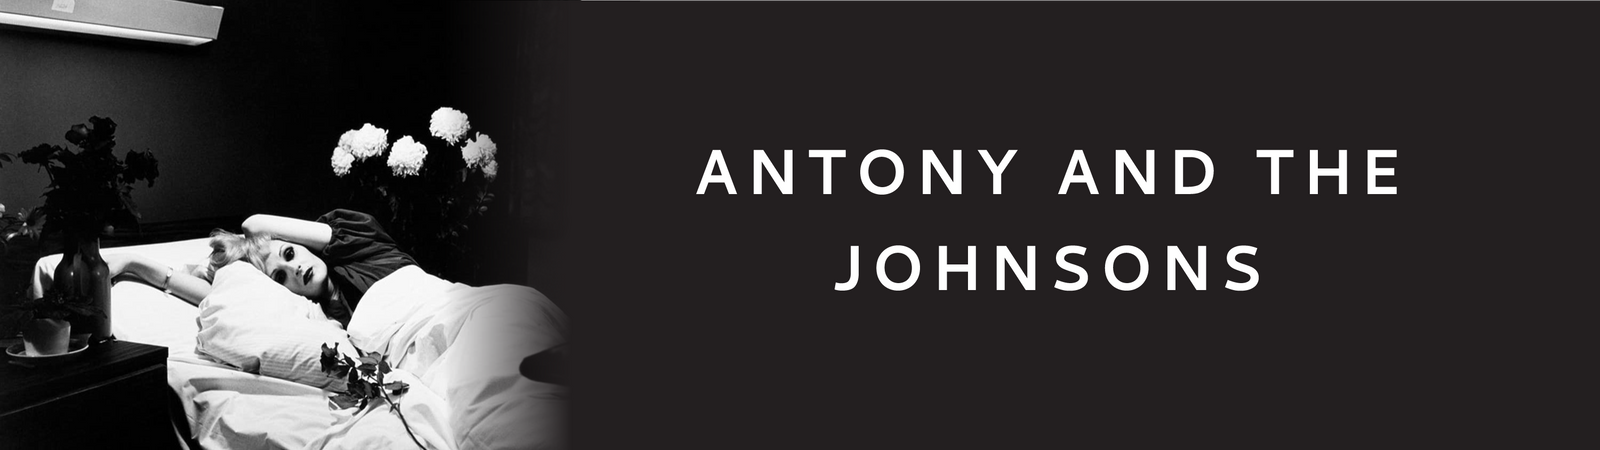 Antony and the Johnsons